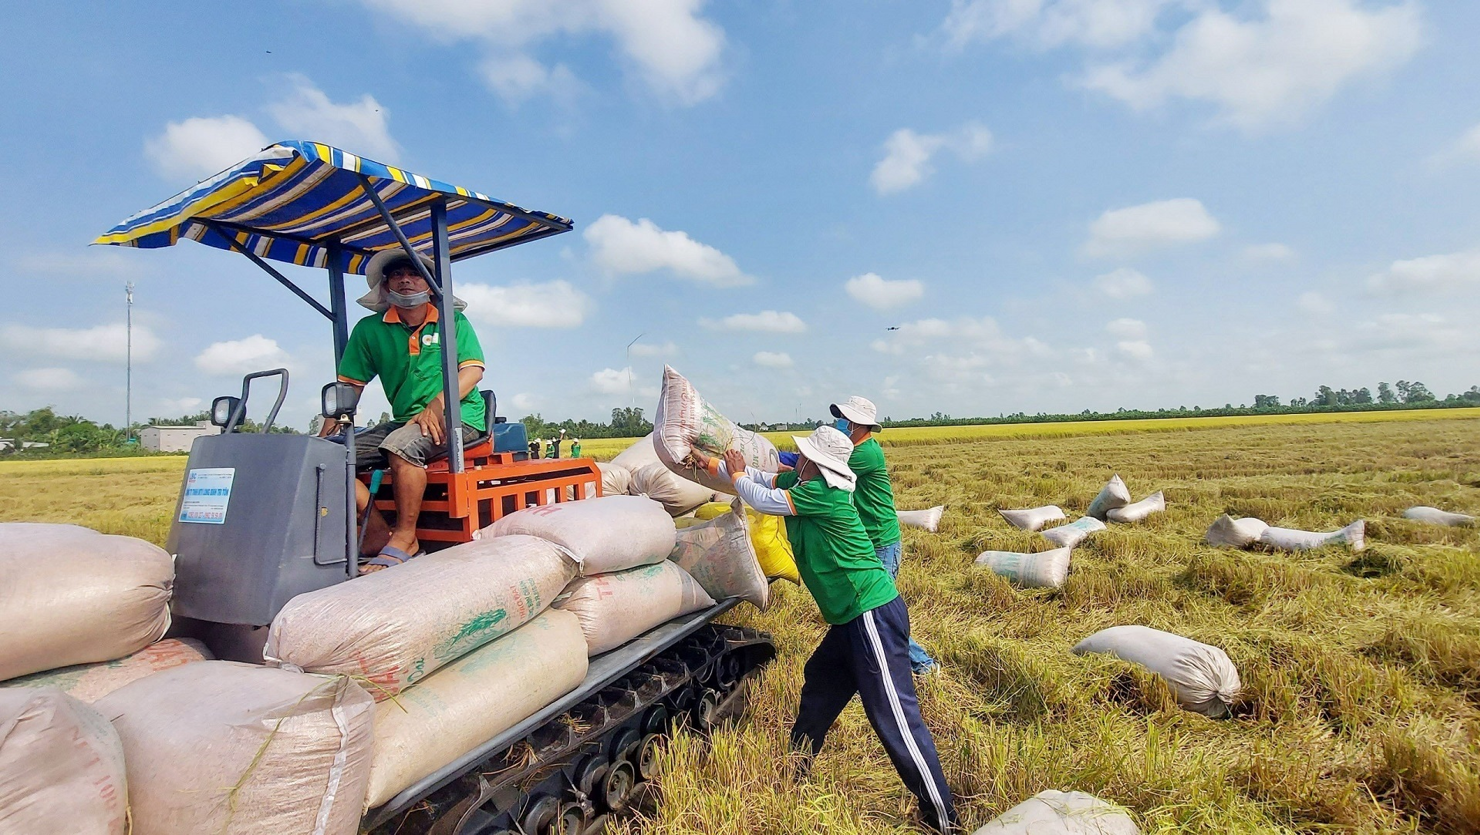 Bộ Công Thương chỉ đạo các thương nhân kinh doanh xuất khẩu gạo tích cực tham gia chương trình bình ổn thị trường trên địa bàn sở tại. Ảnh: internet